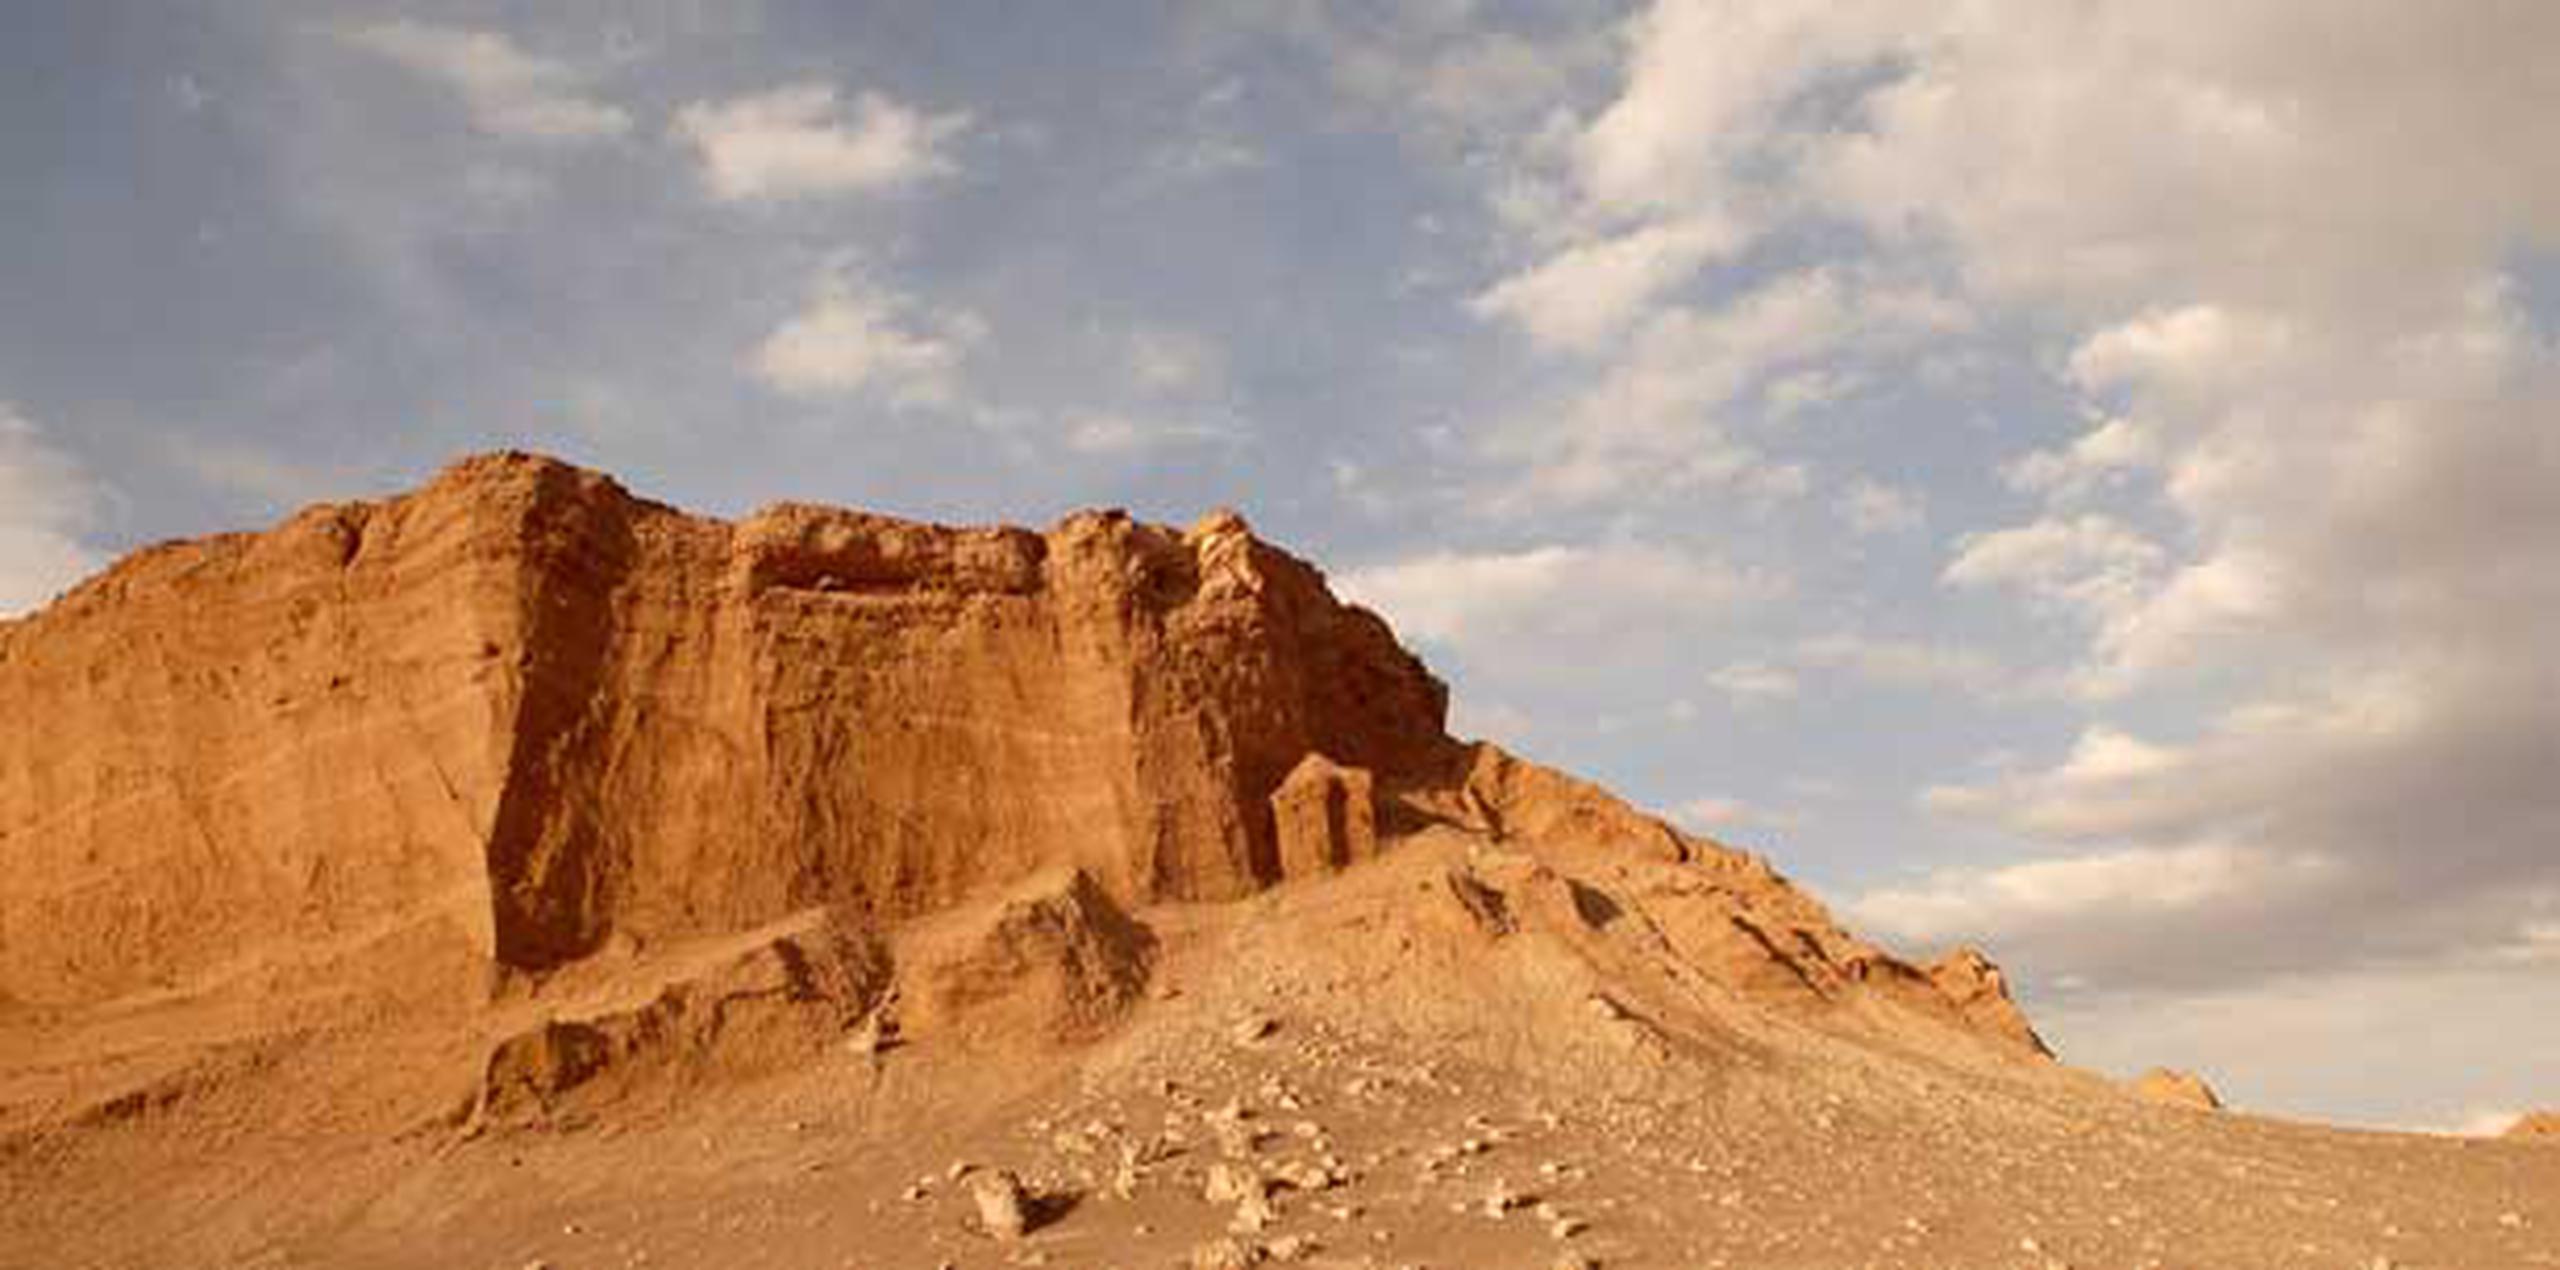 Los expertos eligieron el desierto de Atacama para probar el robot porque ofrece un terreno "representativo de lo que se podría encontrar en Marte". (Archivo)